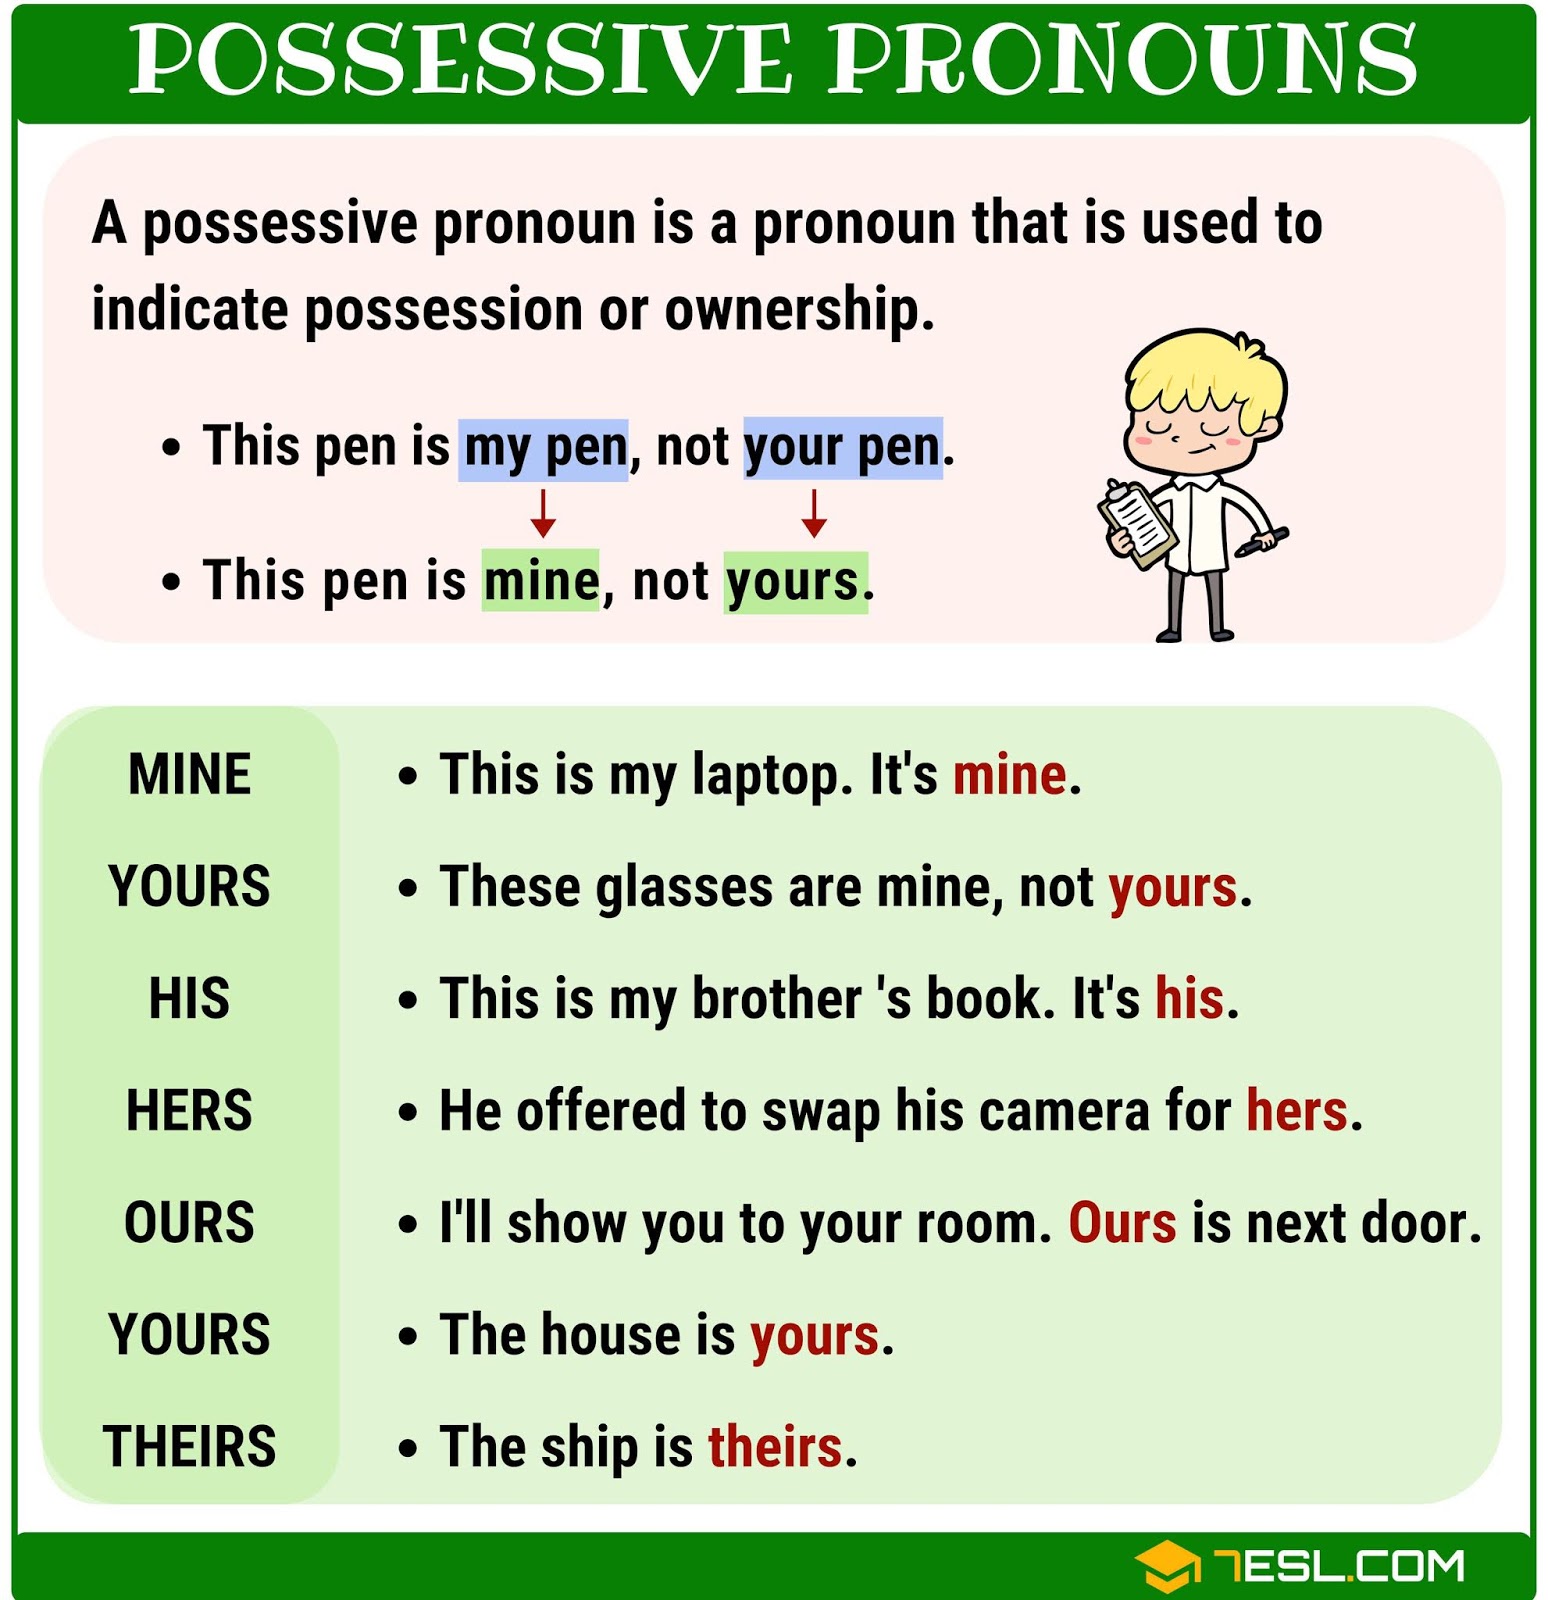 possessives-possessive-pronouns-teacher-nathalia